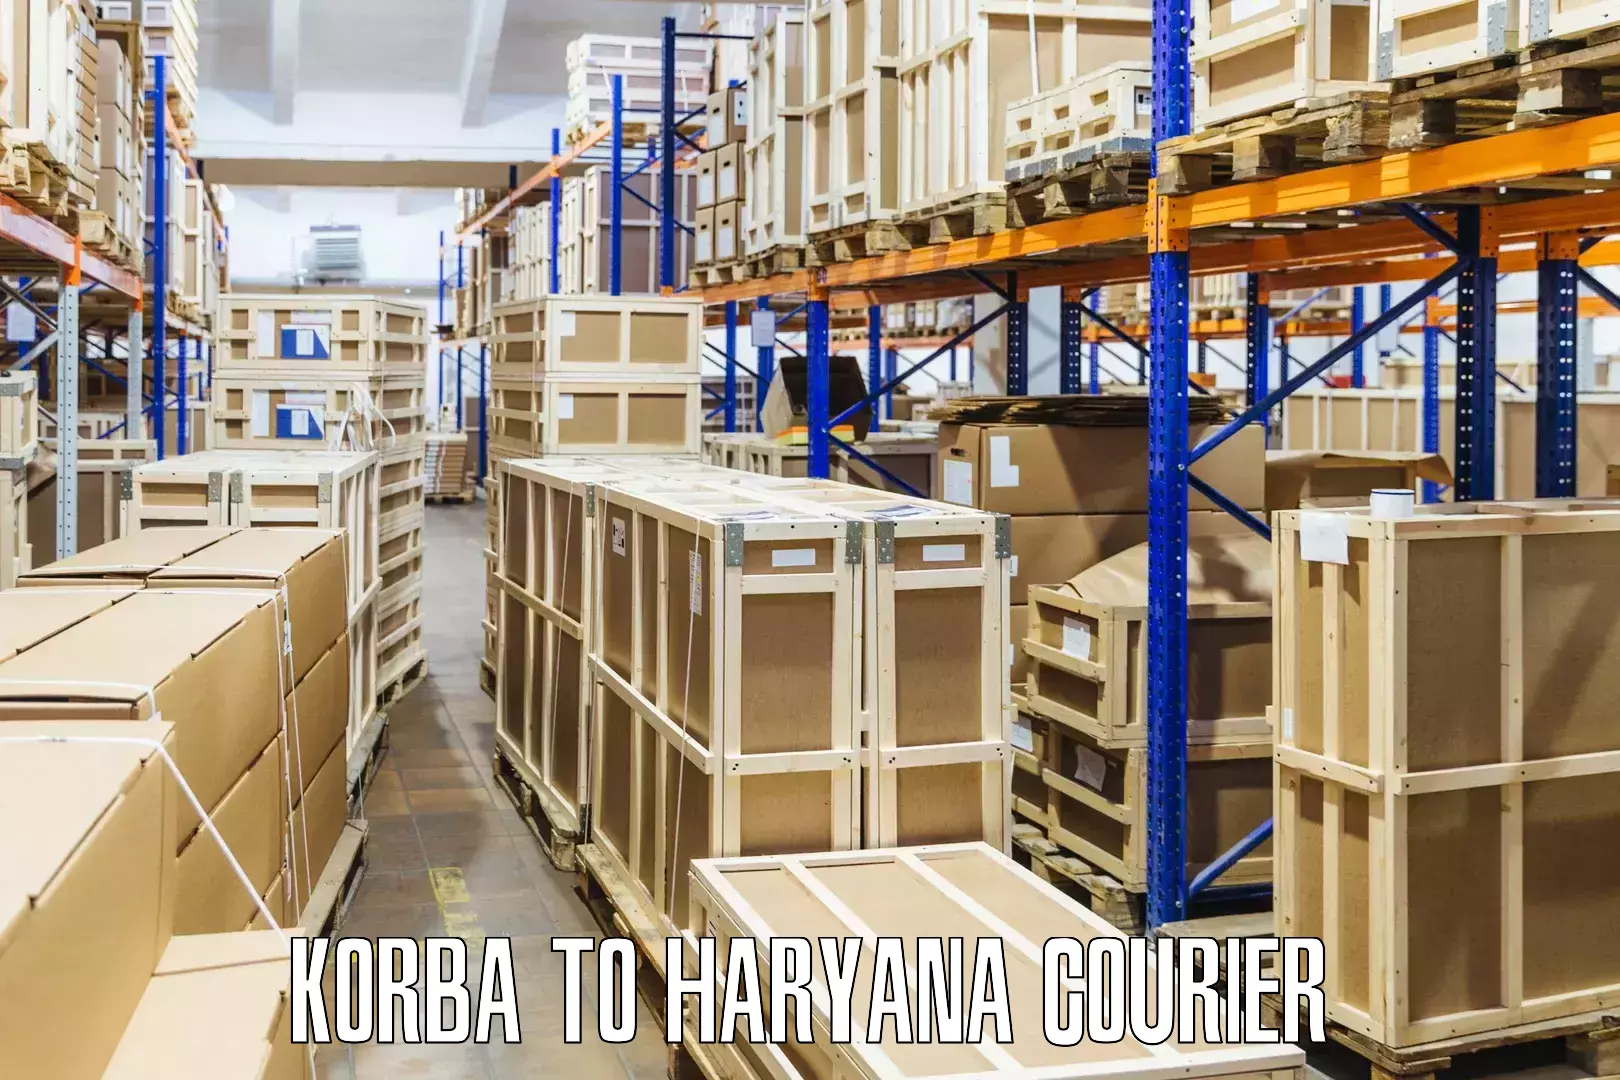 Comprehensive shipping network Korba to Panchkula